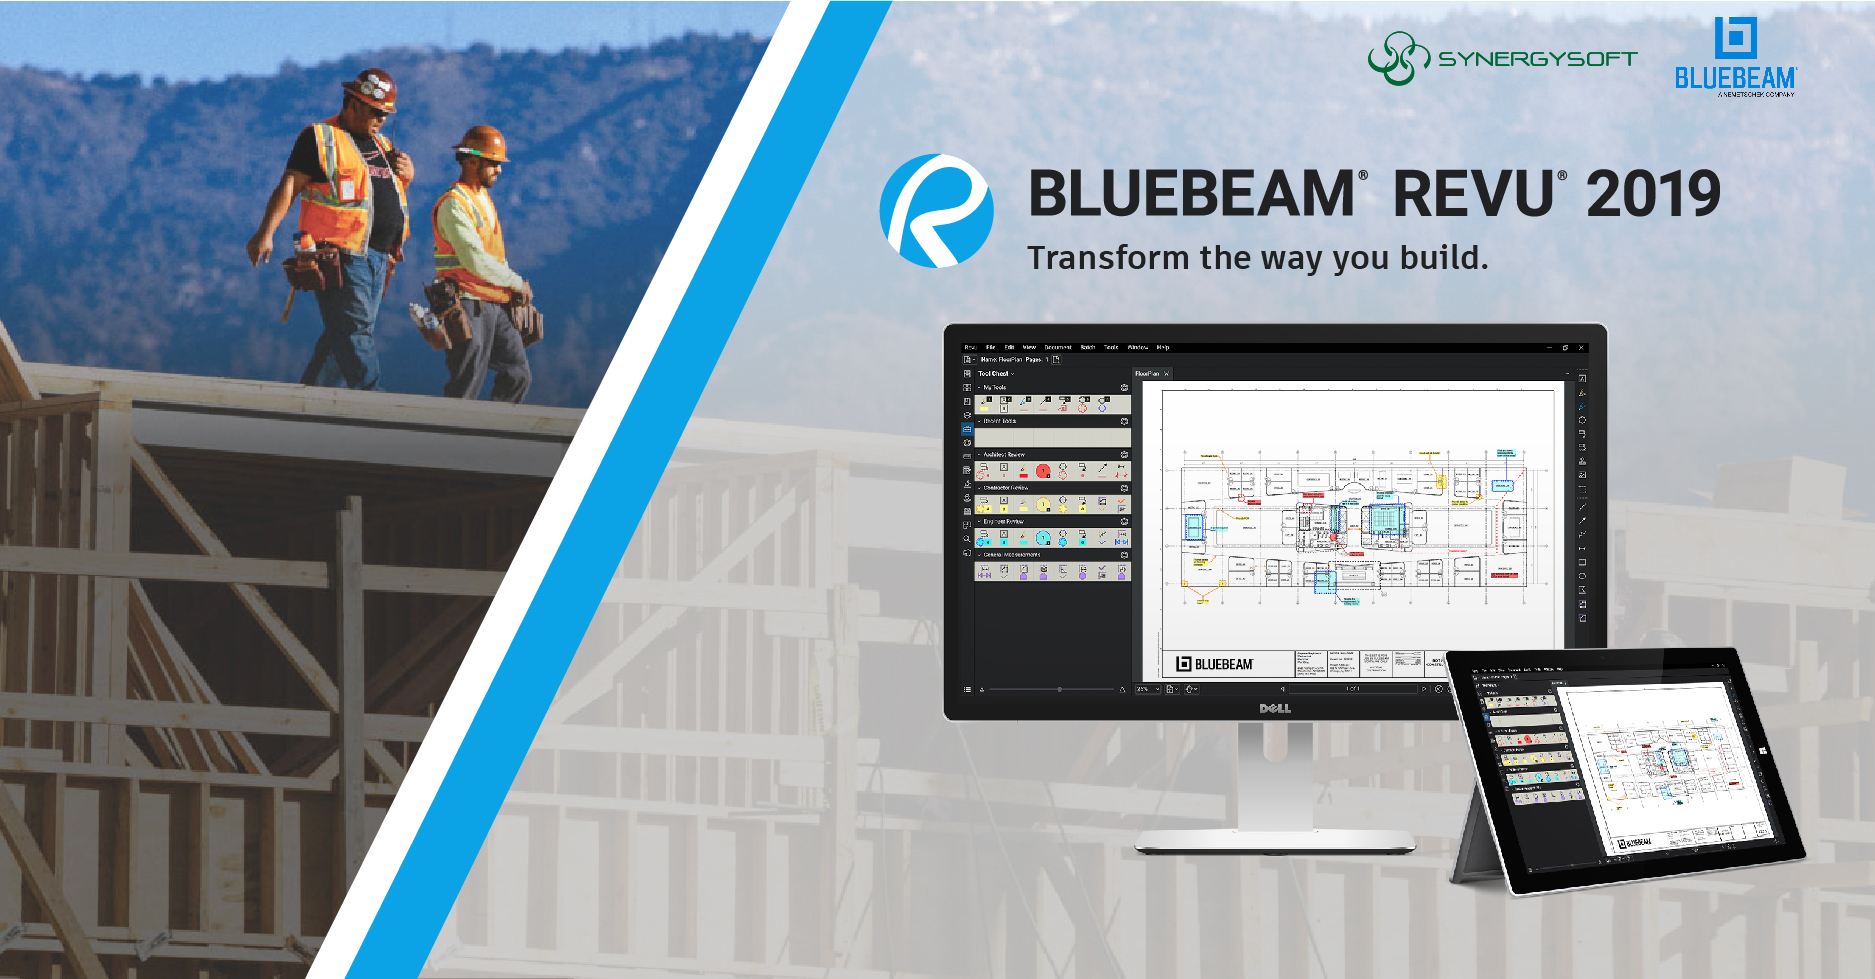 Bluebeam Revu eXtreme 21.0.30 free instals